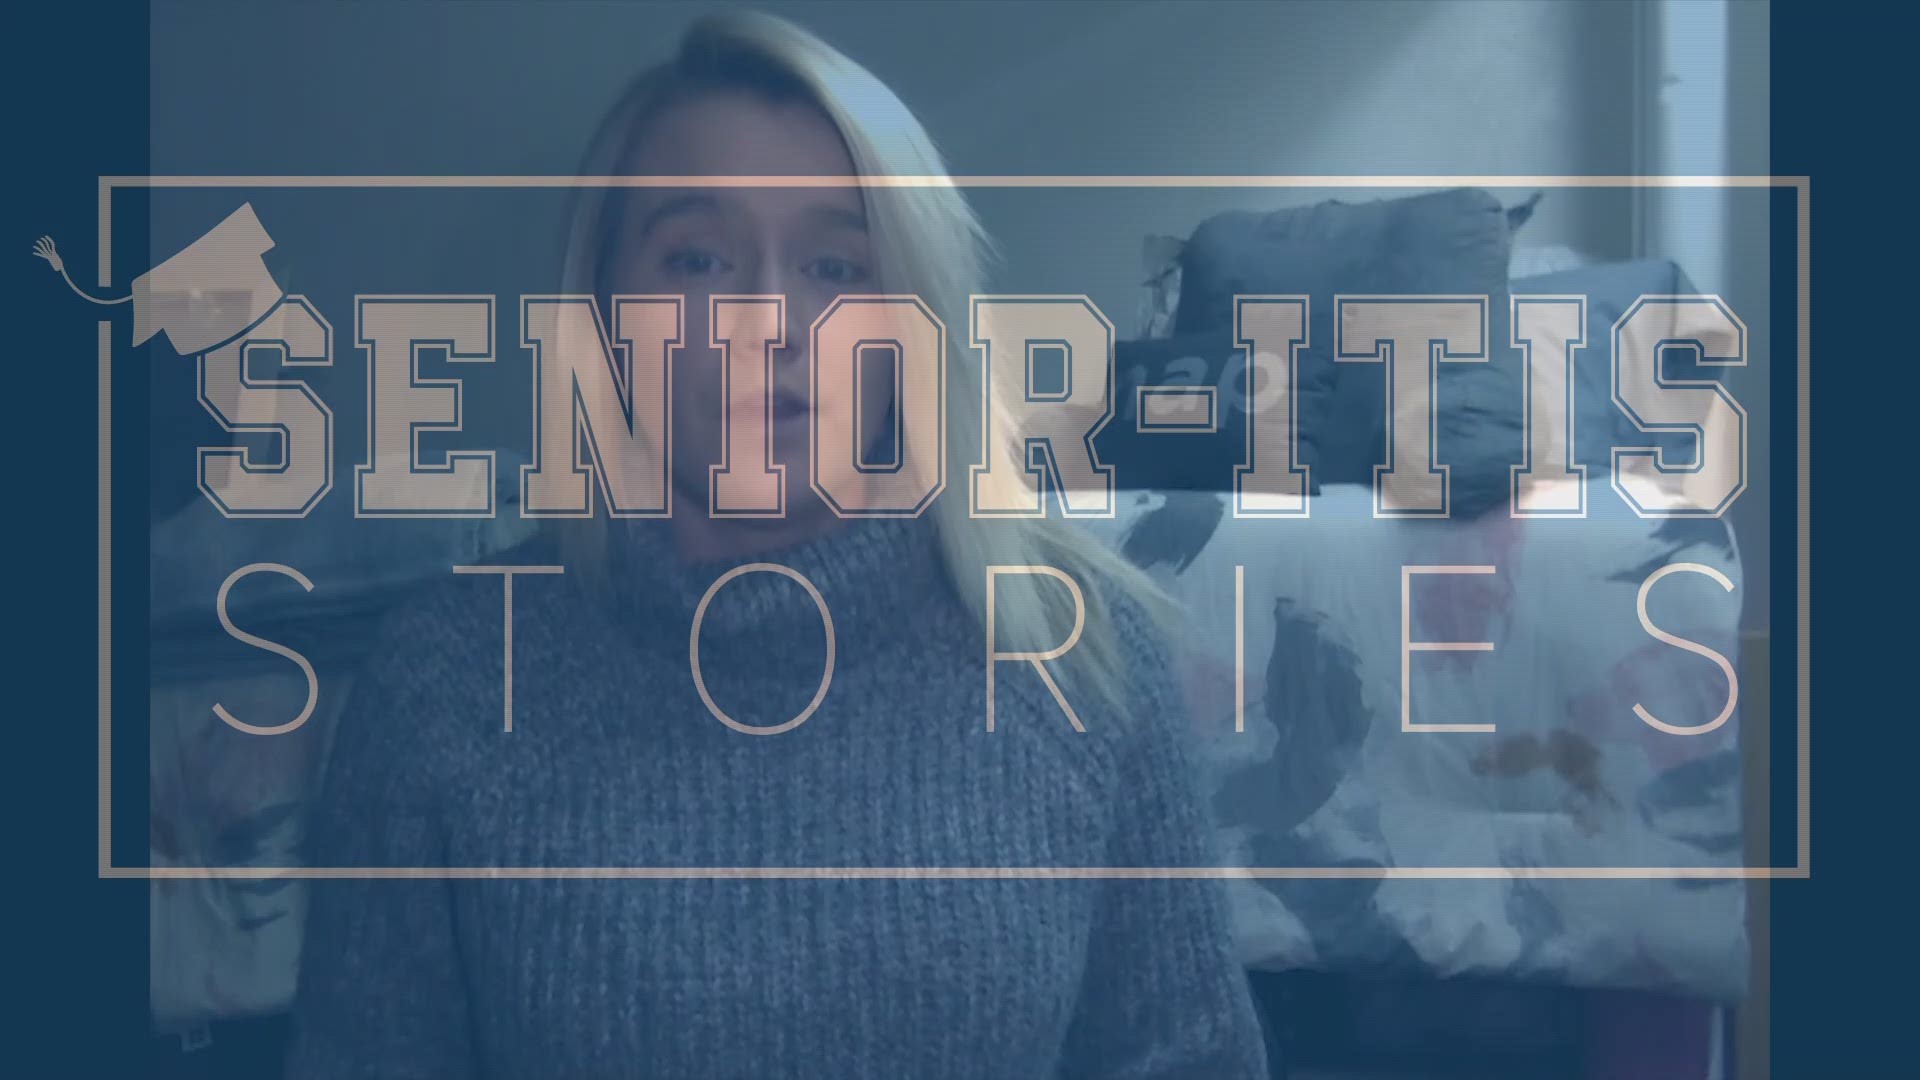 Senior-itis Stories: Flu Season